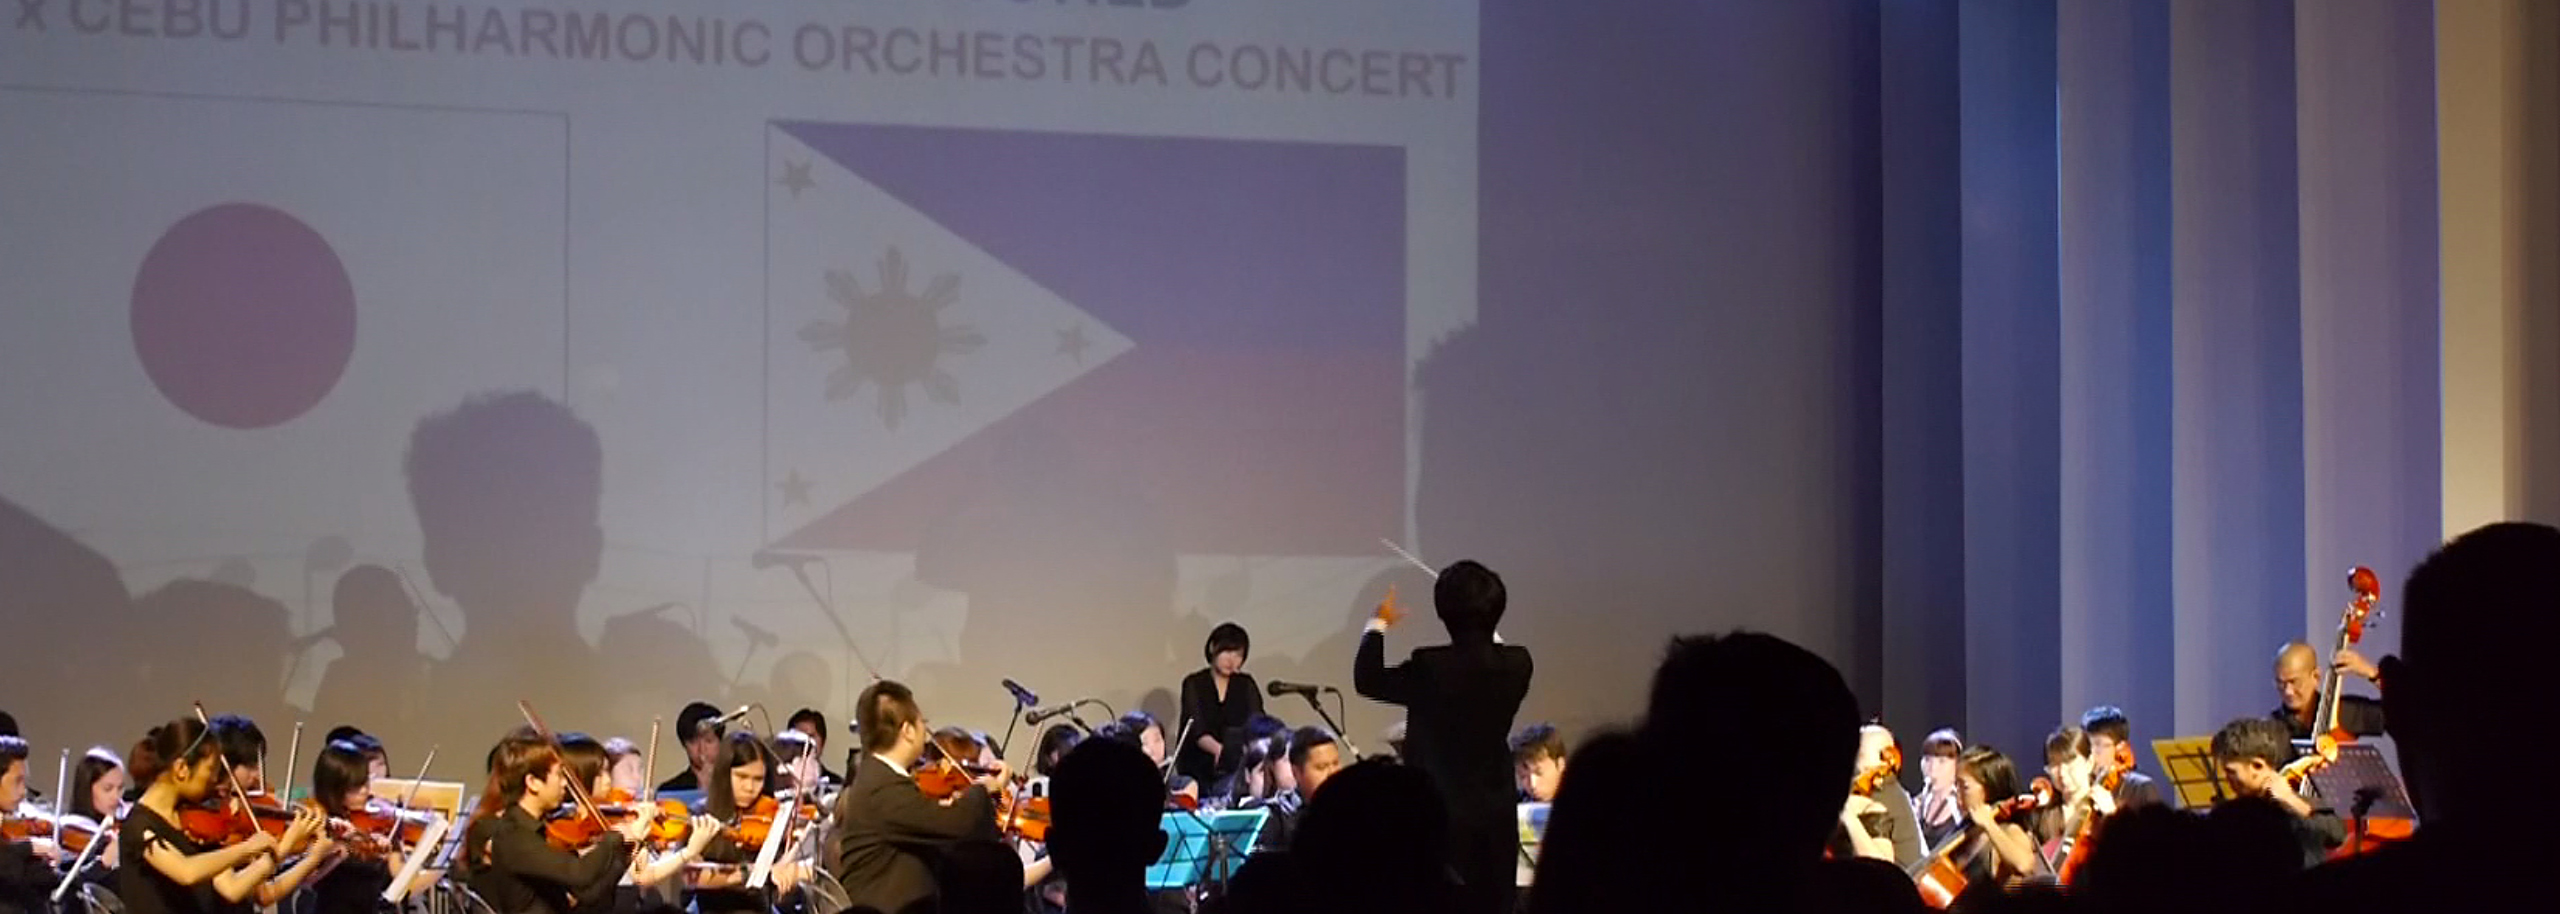 UUU Orchestra & Cebu Philharmonic Orhestra 2014